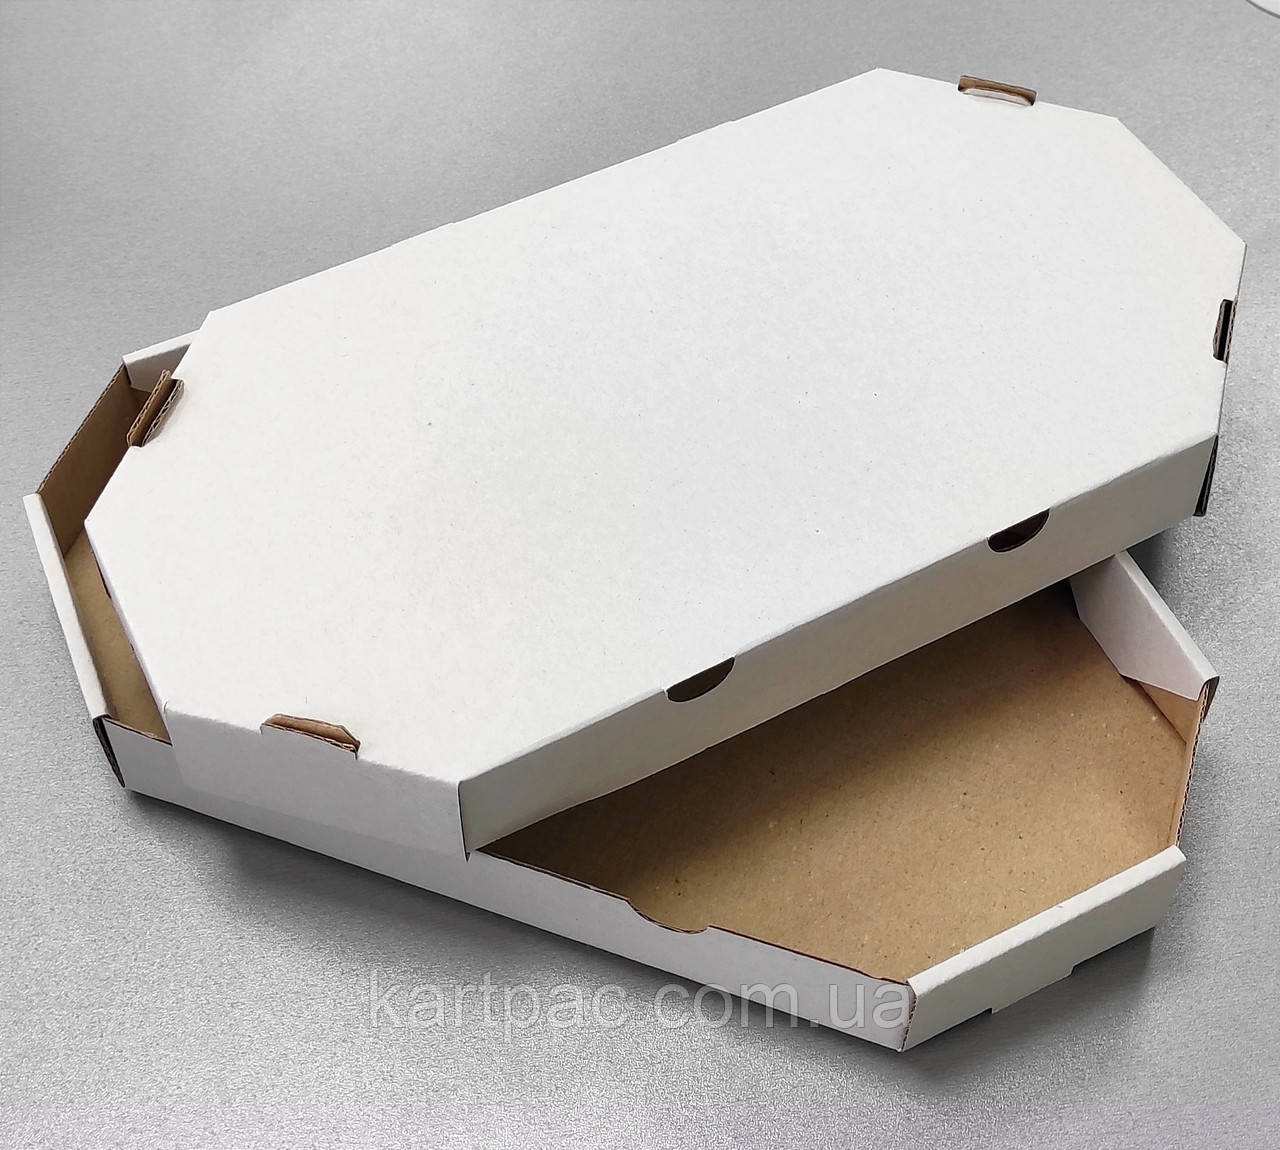 Коробка для половини піци та кальцоне 320*160*35